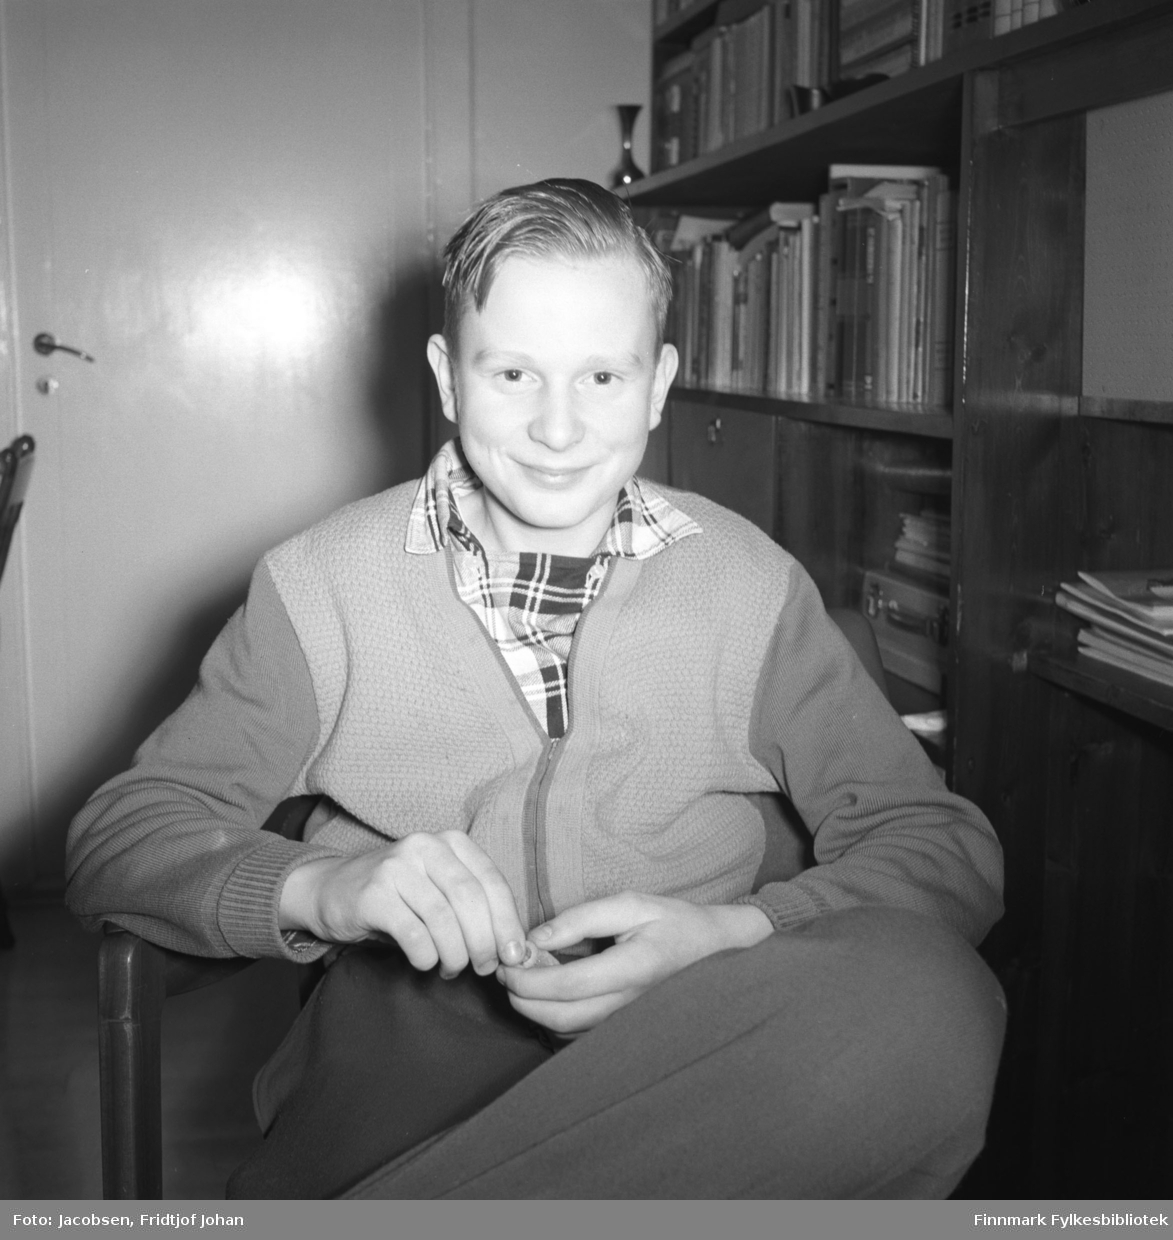 Arne Jacobsen poserer for fotografen. Han sitter i en lenestol iført en ganske mørk bukse, litt lysere genser/jakke og rutet skjorte under. En mørk veggseksjon står langs veggen til høyre på bildet. En del bøker står i hyllene og noen papirer/hefter ligger også der. Til venstre på bildet står en dør som er lukket.